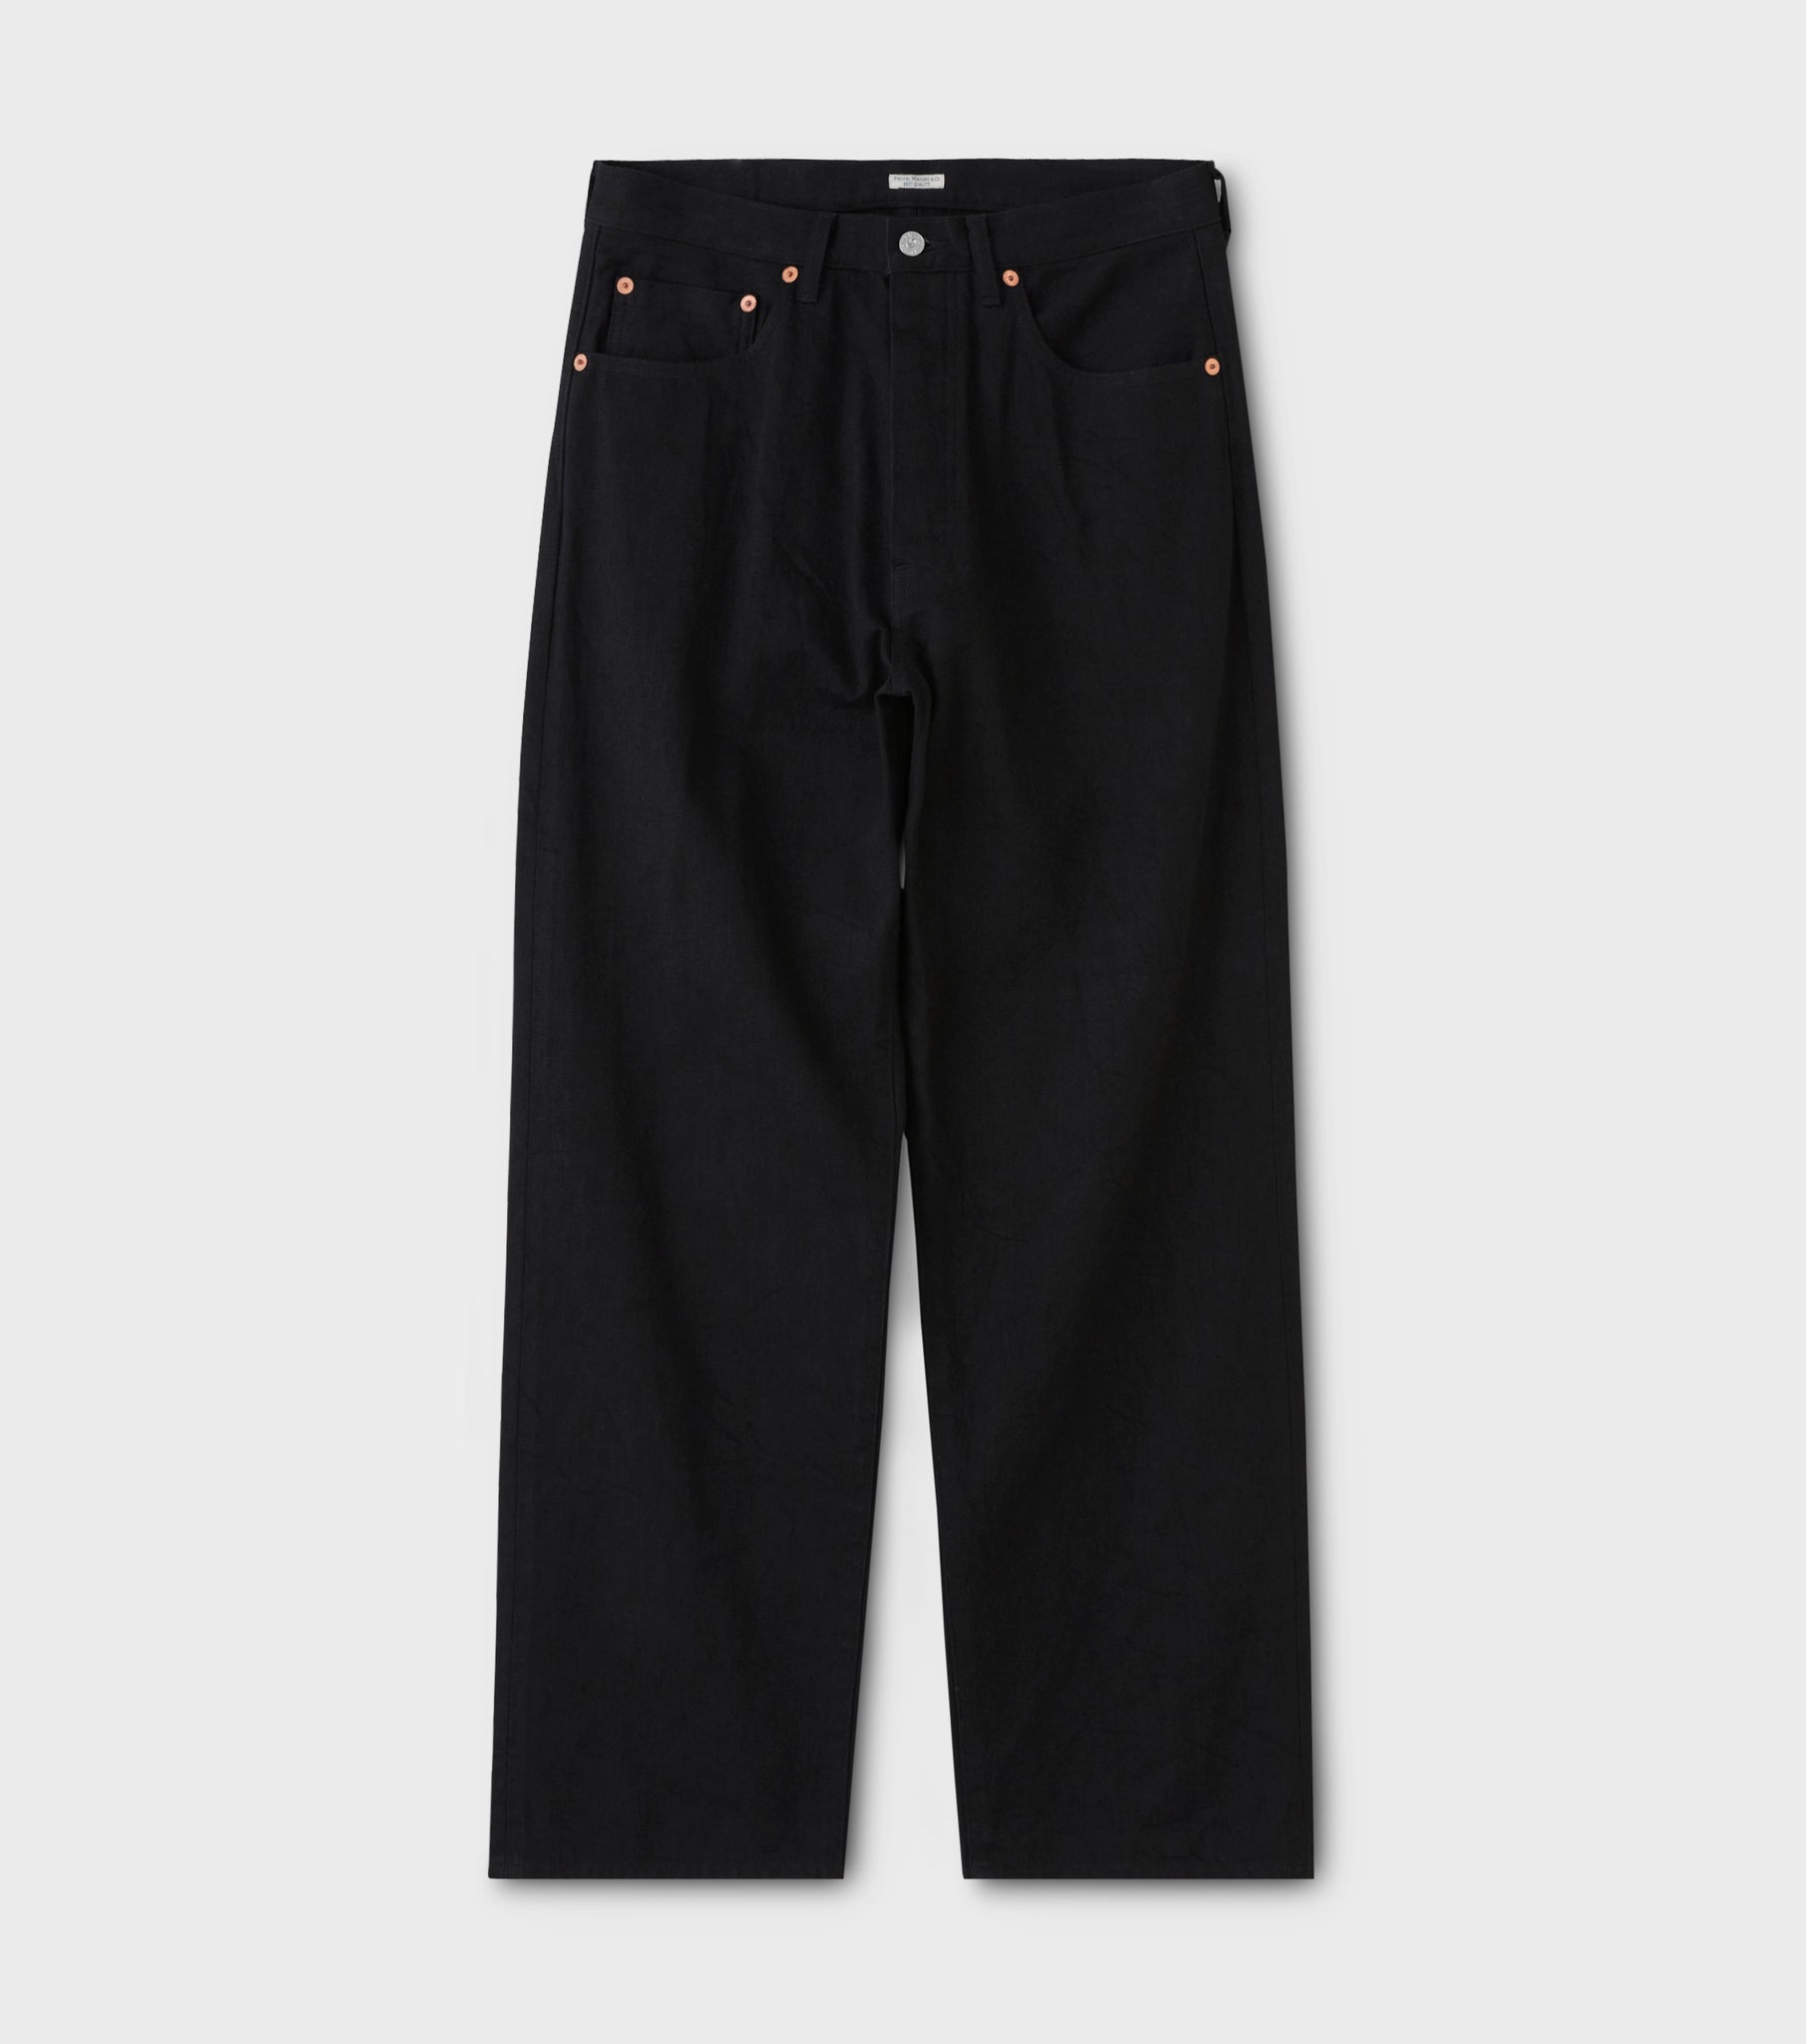 ヒップ109cmPHIGVEL Classic Jeans - Wide black 1